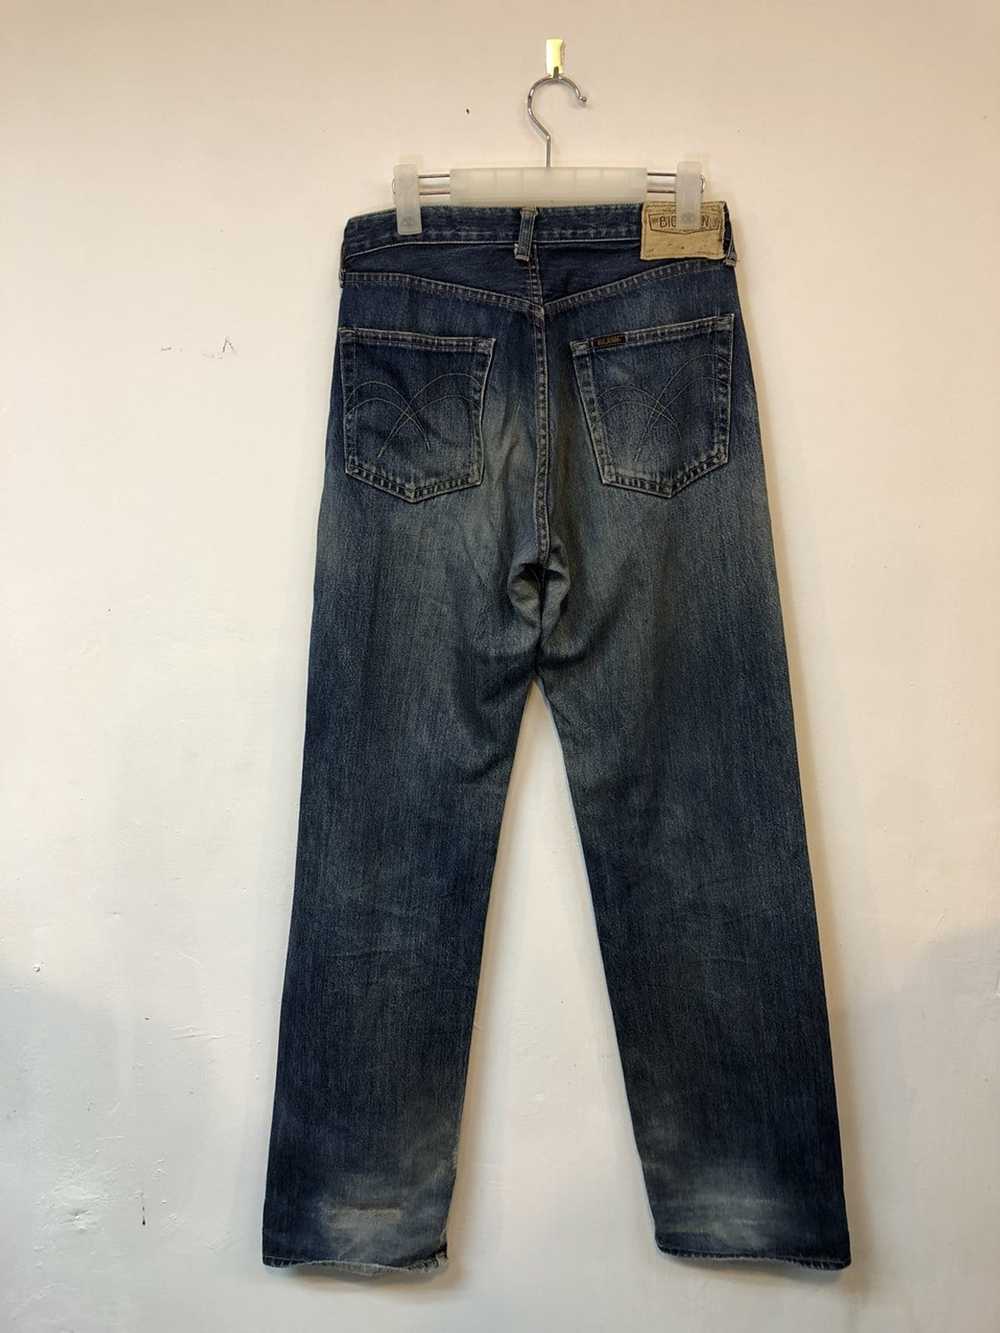 Vintage Selvedge Jeans Big John - image 3